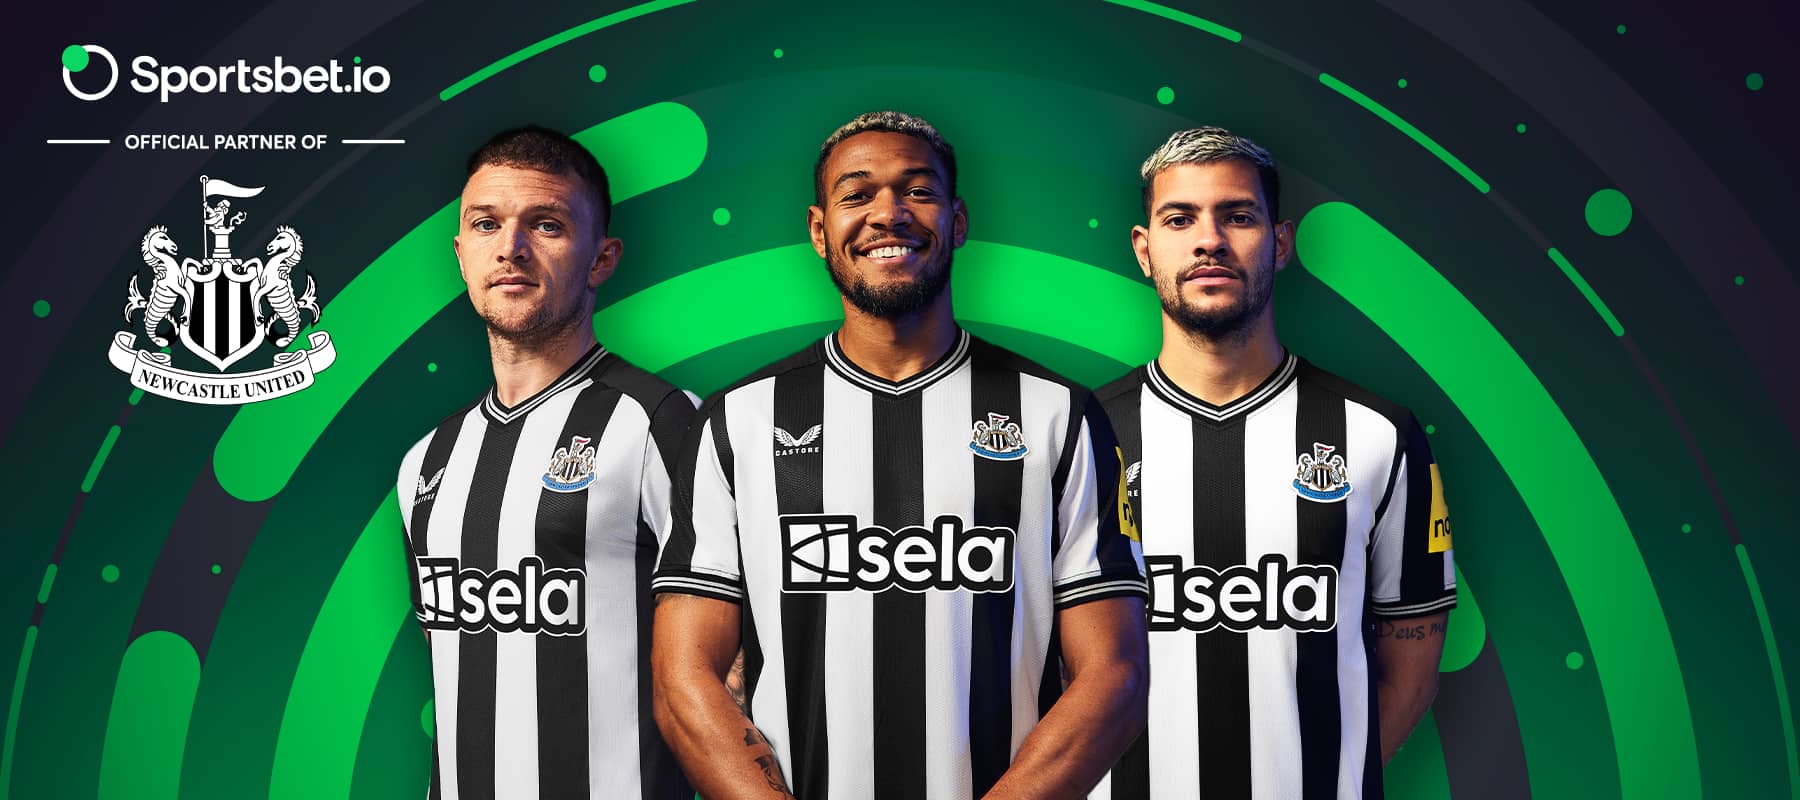 En la mira de alturas más altas: la asociación de Sportsbet.io y Newcastle United